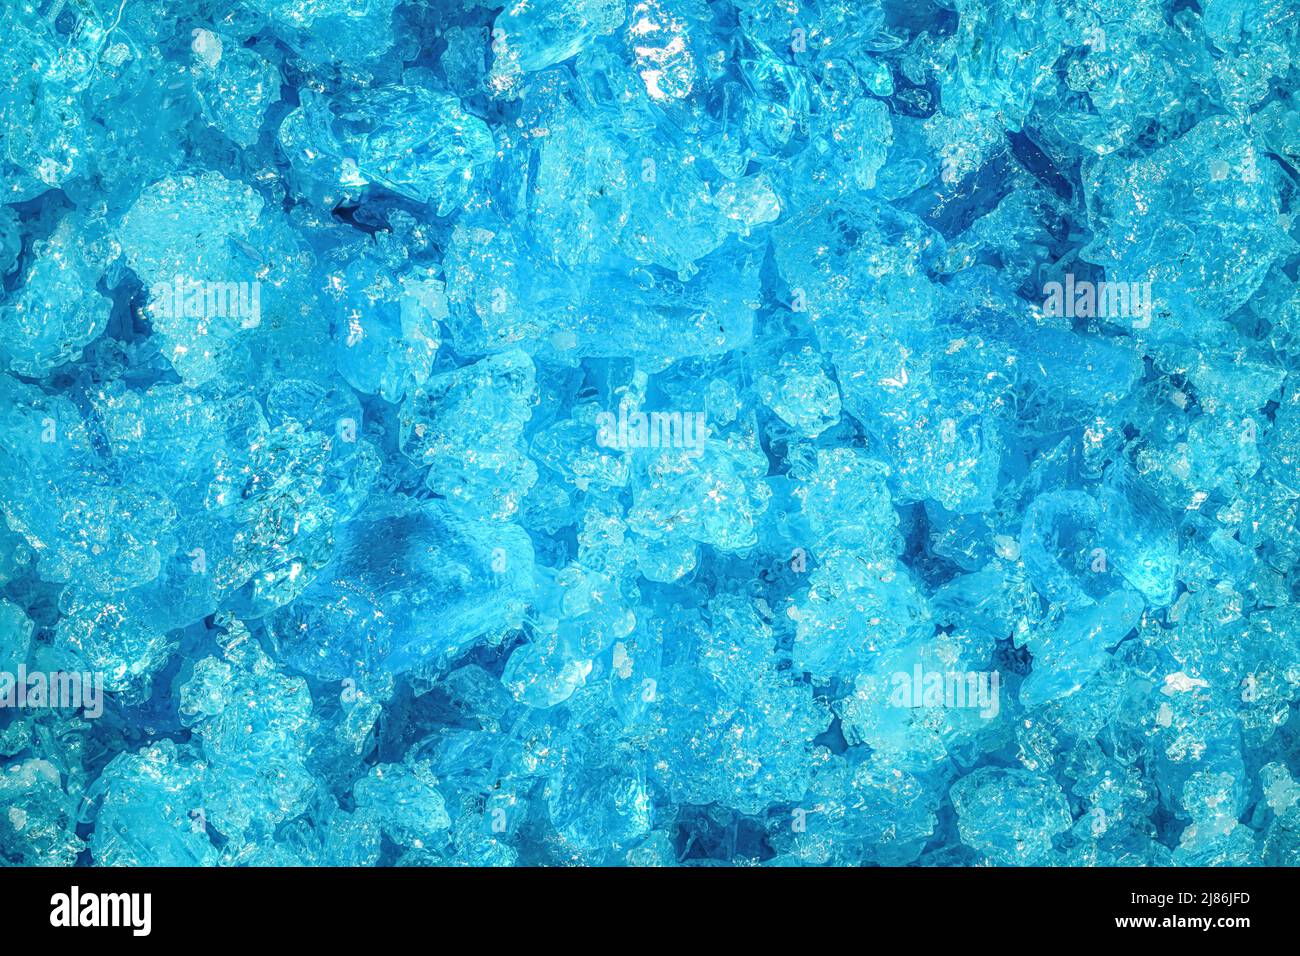 Blaue Kupfersulfatkristalle unter 4x Mikroskopvergrößerung - Bildbreite = 8mm Stockfoto